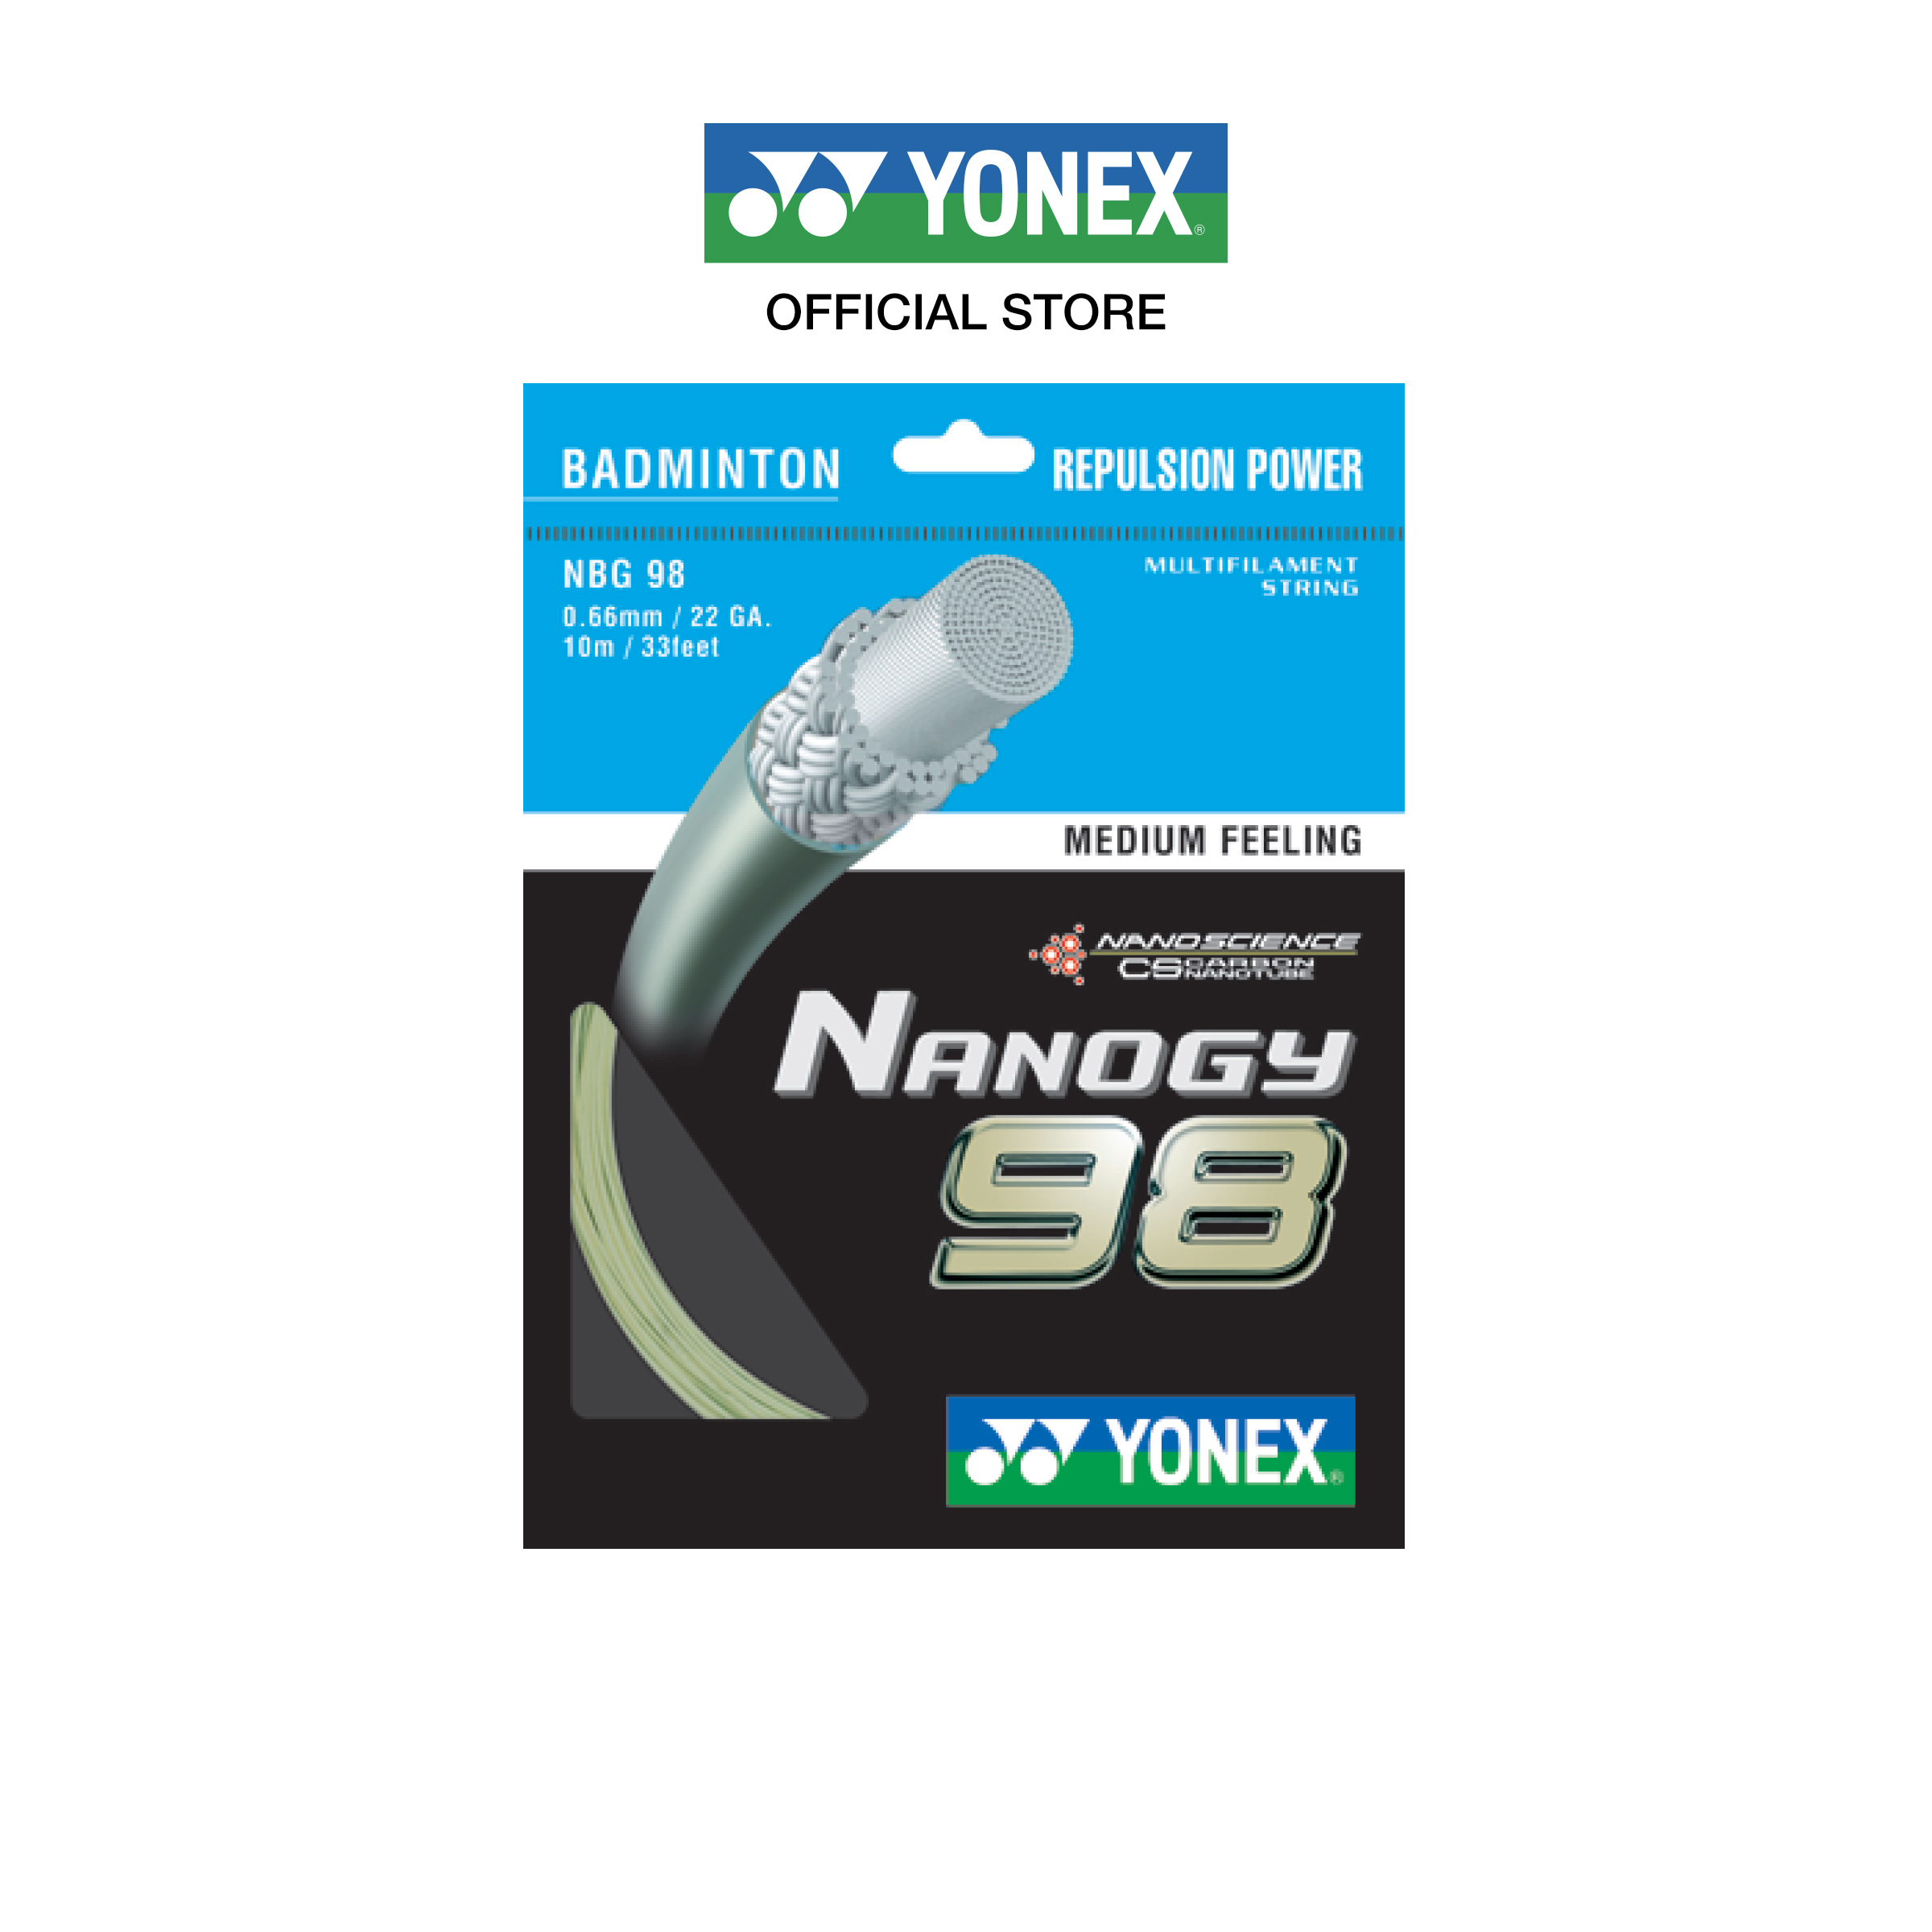 YONEX รุ่น NANOGY 98 เอ็นแบดมินตัน เส้นใยถักขนาด 0.66 มม. ผลิตประเทศญี่ปุ่น  แรงดีดยอดเยี่ยมสำหรับการบุกและการป้องกัน